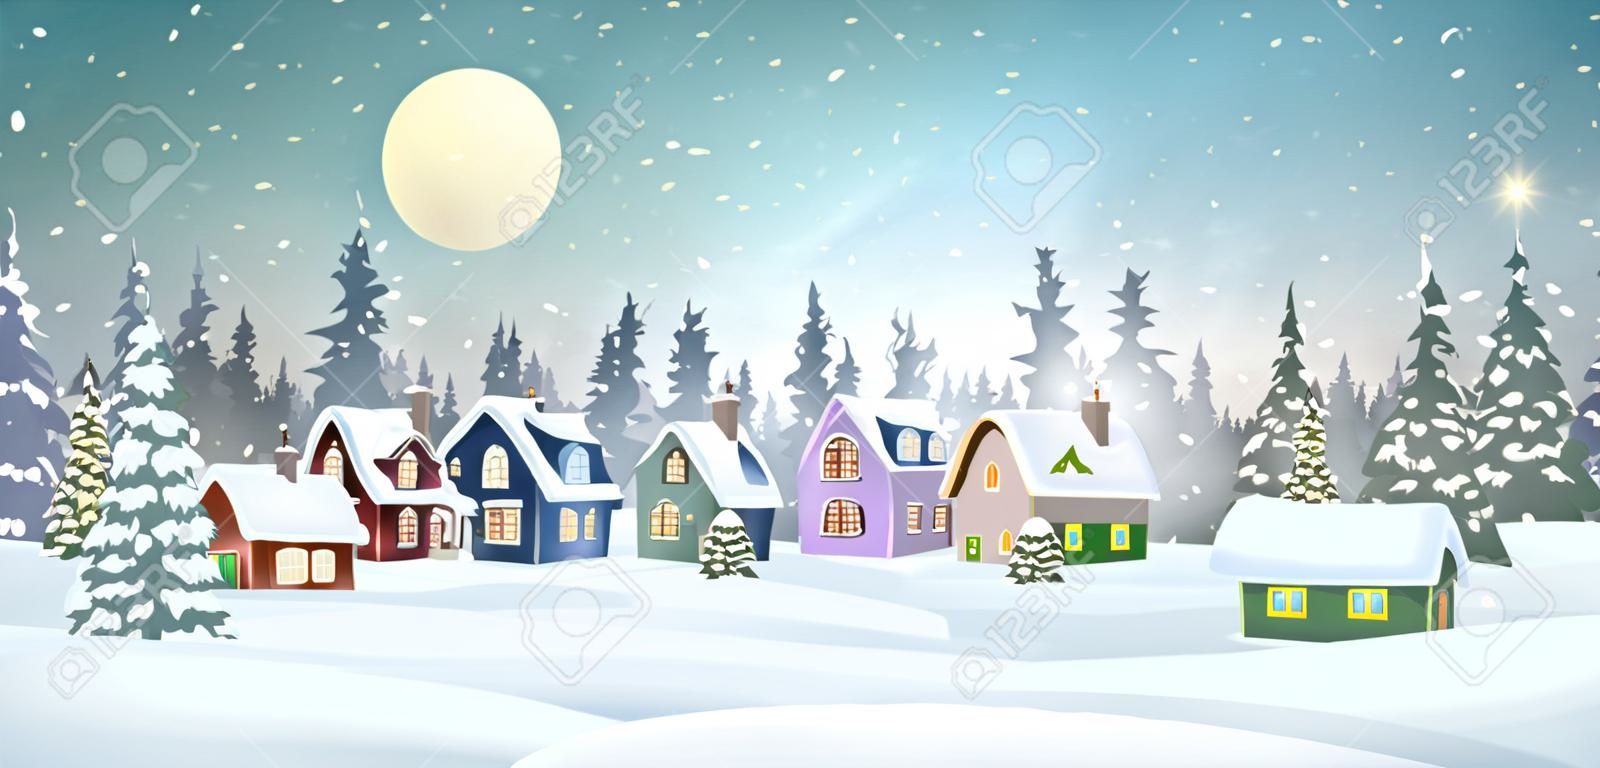 소나무 숲 크리스마스 휴일 벡터 일러스트 레이 션에 눈 덮힌 집들이 있는 겨울 마을 풍경